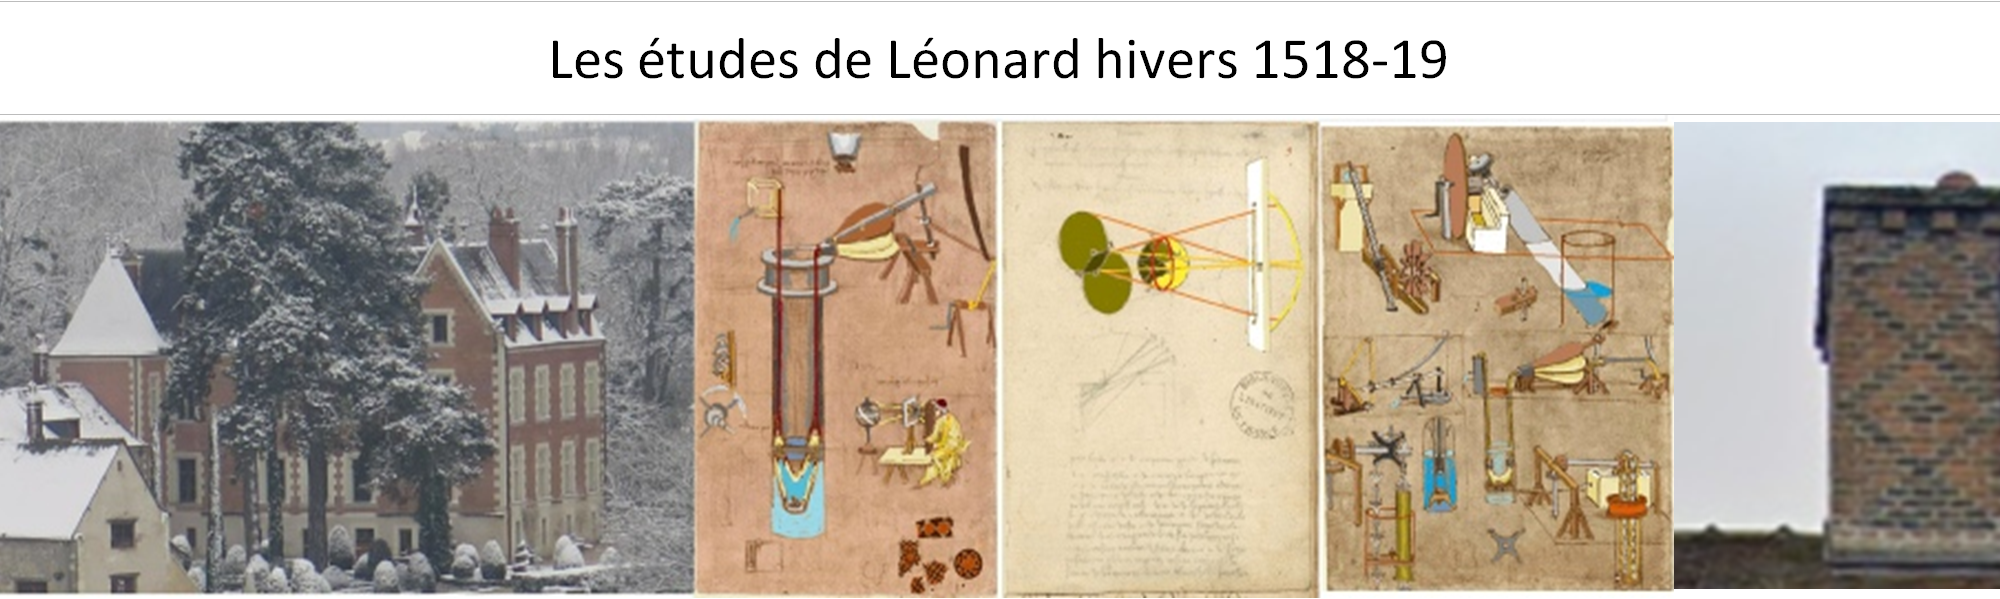 Les études de Léonard hivers 1518-19